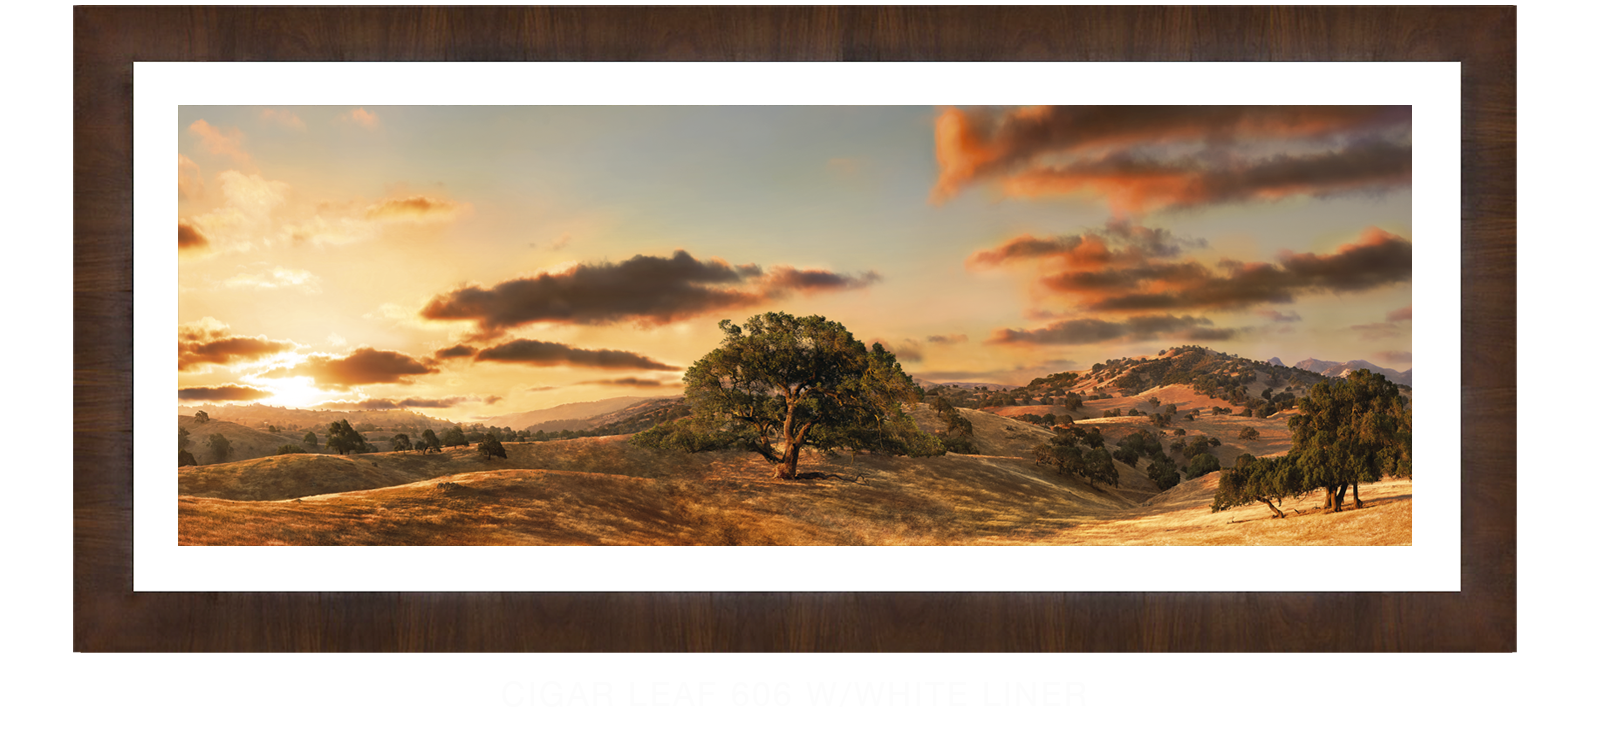 21OAKS Cigar Leaf 606 w_Wht Liner T